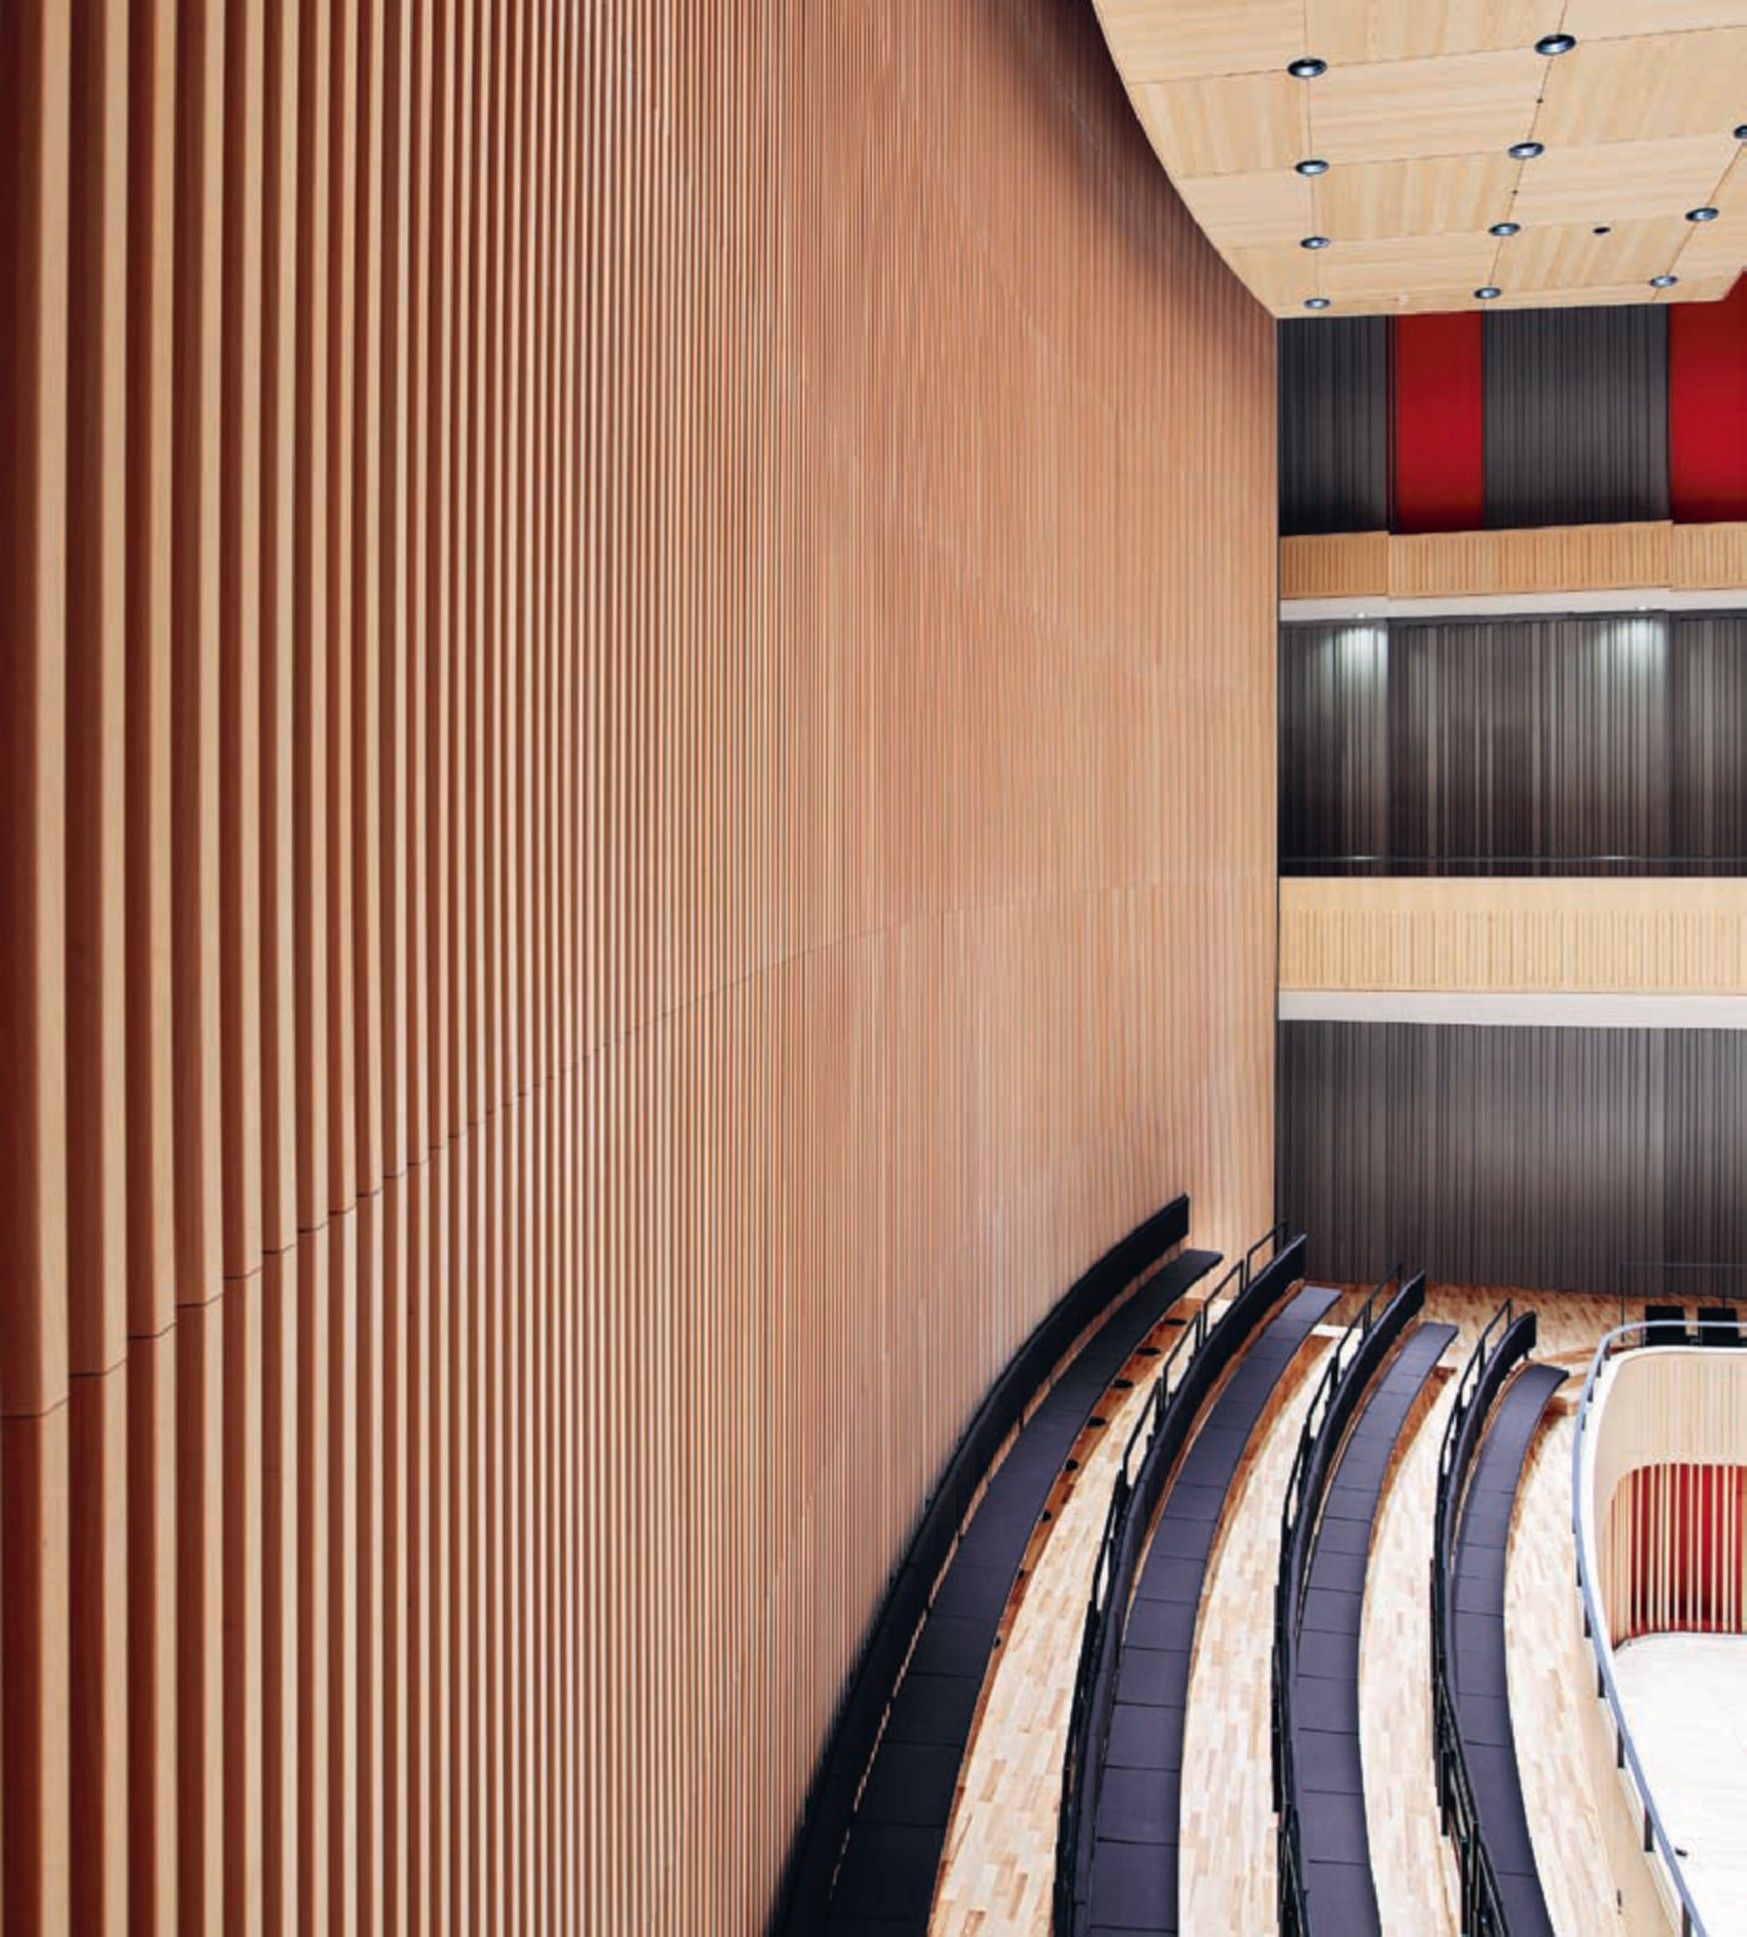 Конценртный зал - отделка панелями из древесноволокнистого гипса кешированы натуральным шпоном